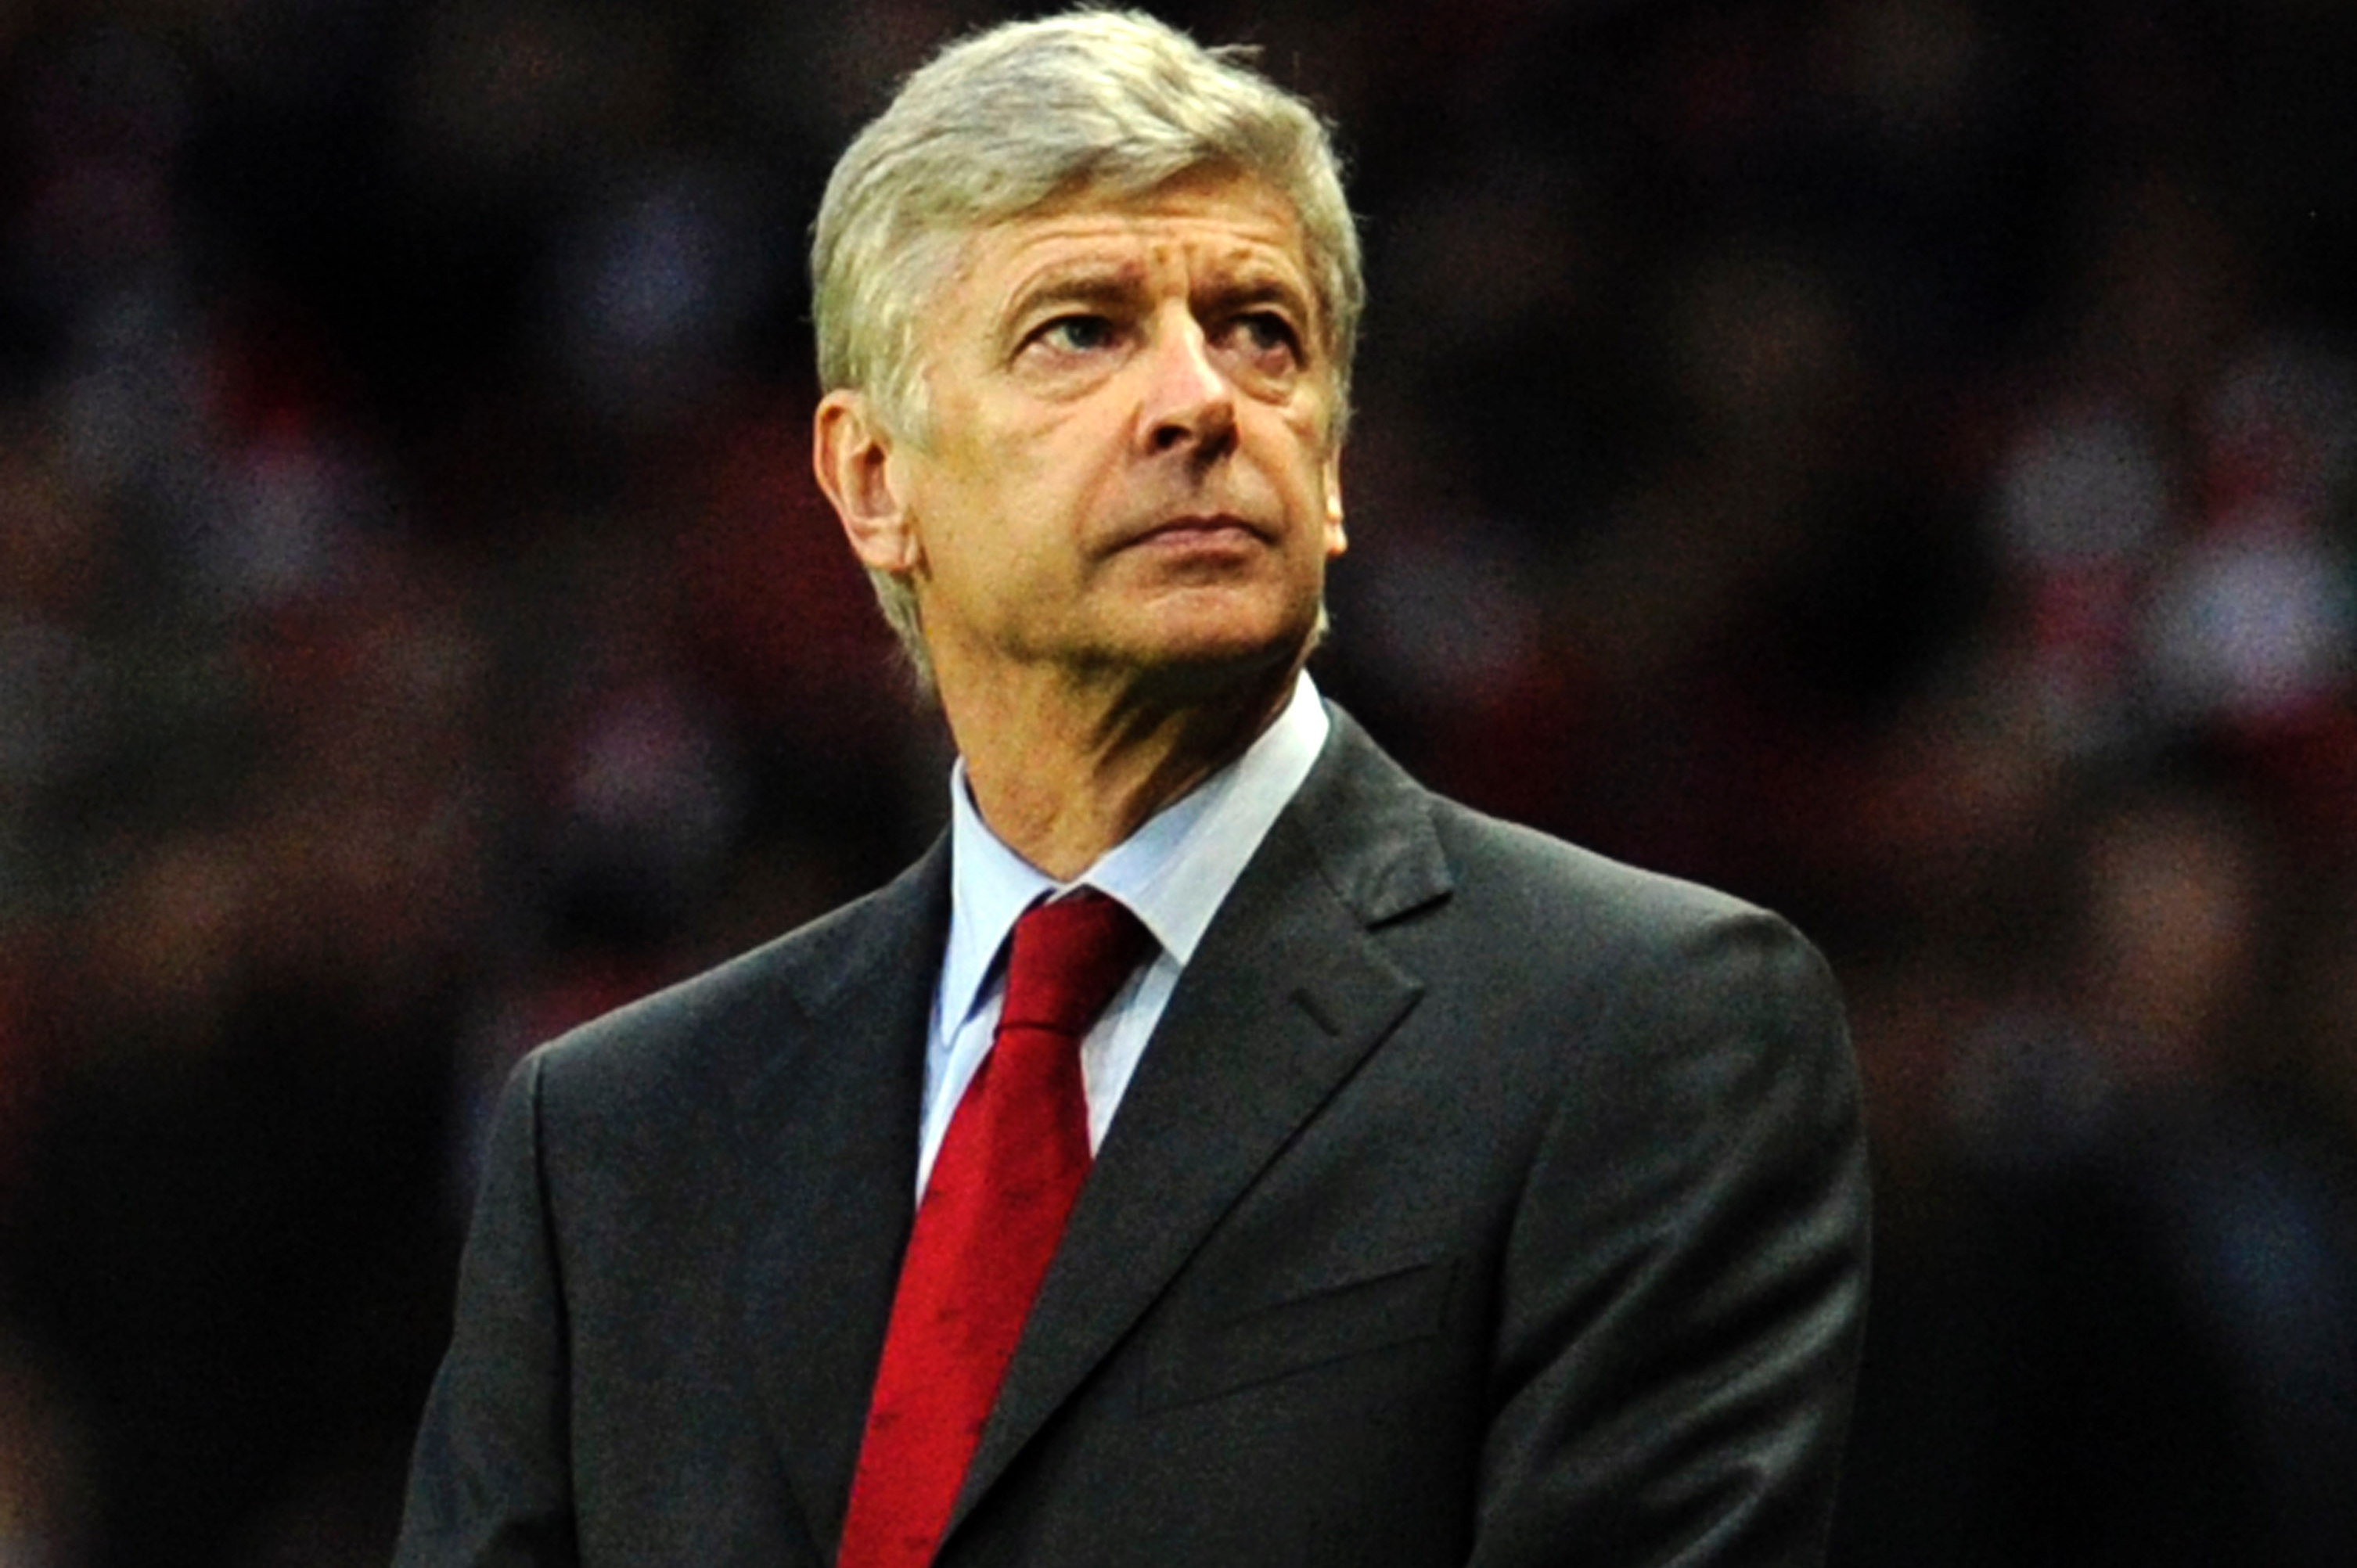 Arsenal-tränaren Arsene Wenger menar att de är utsatta för en konspiration i spelordningen.